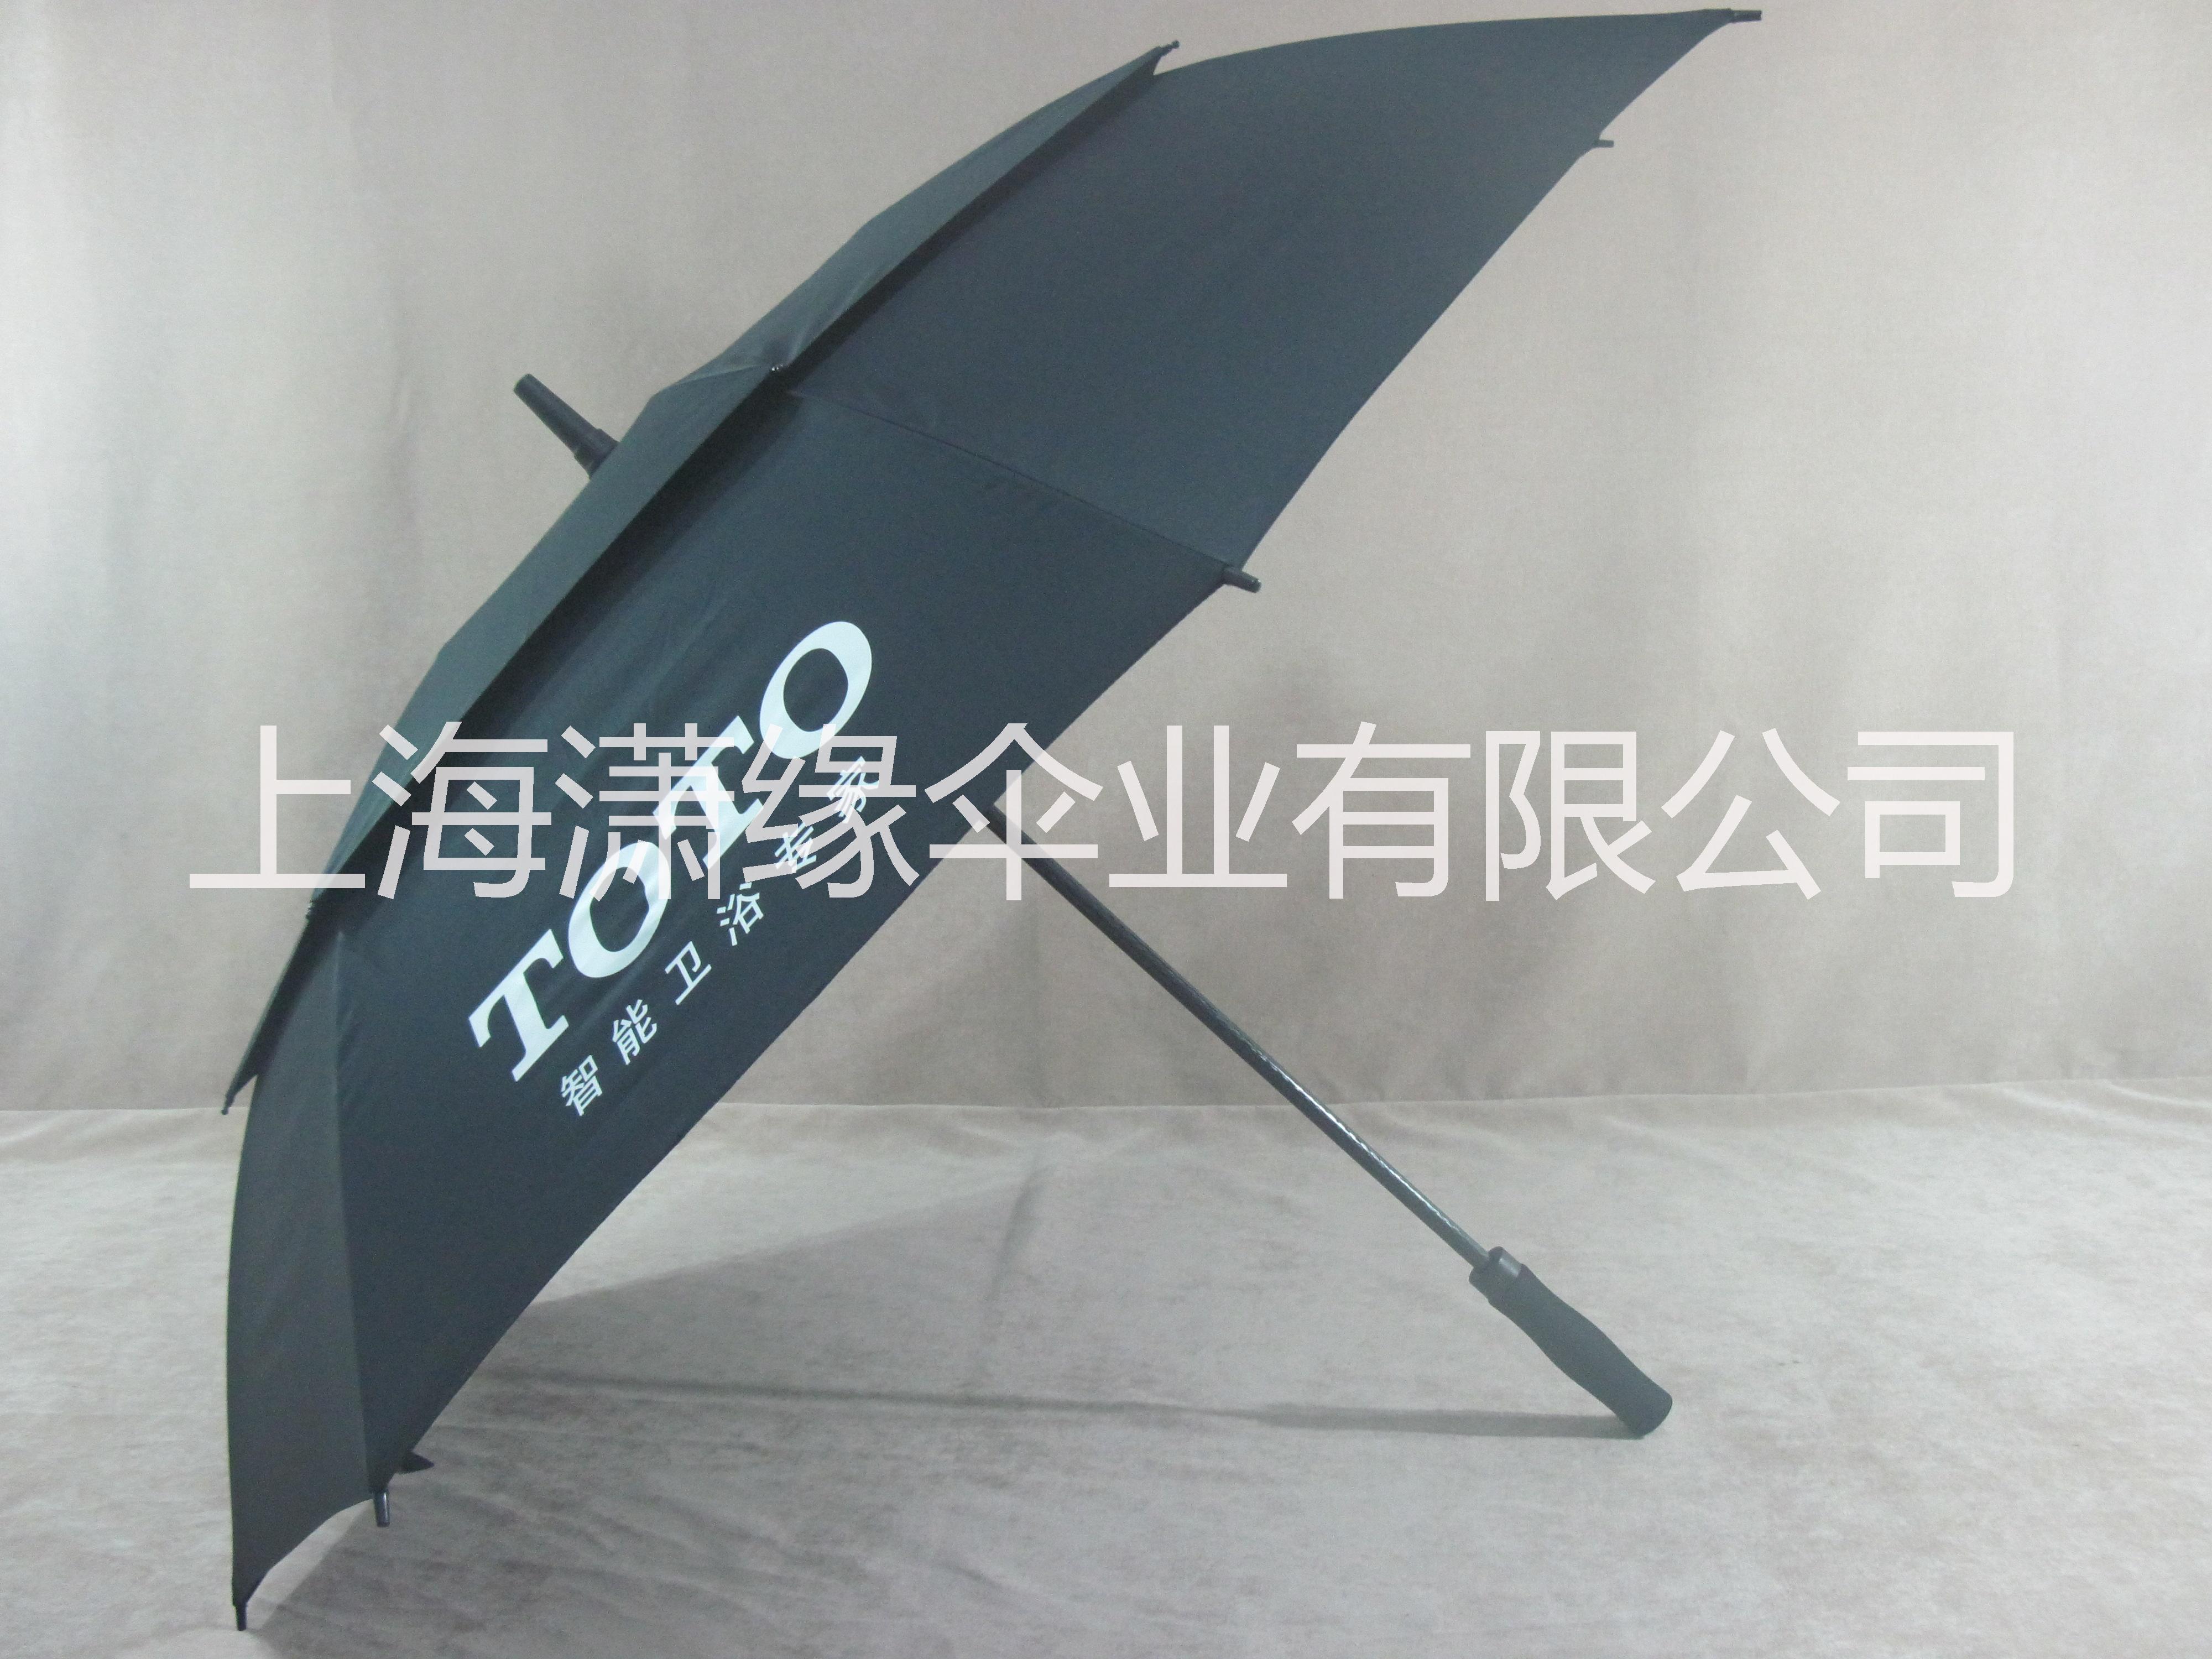 定好伞找上海潇缘伞业 专业生产定制中高档雨伞、遮阳伞以及各类户外伞图片